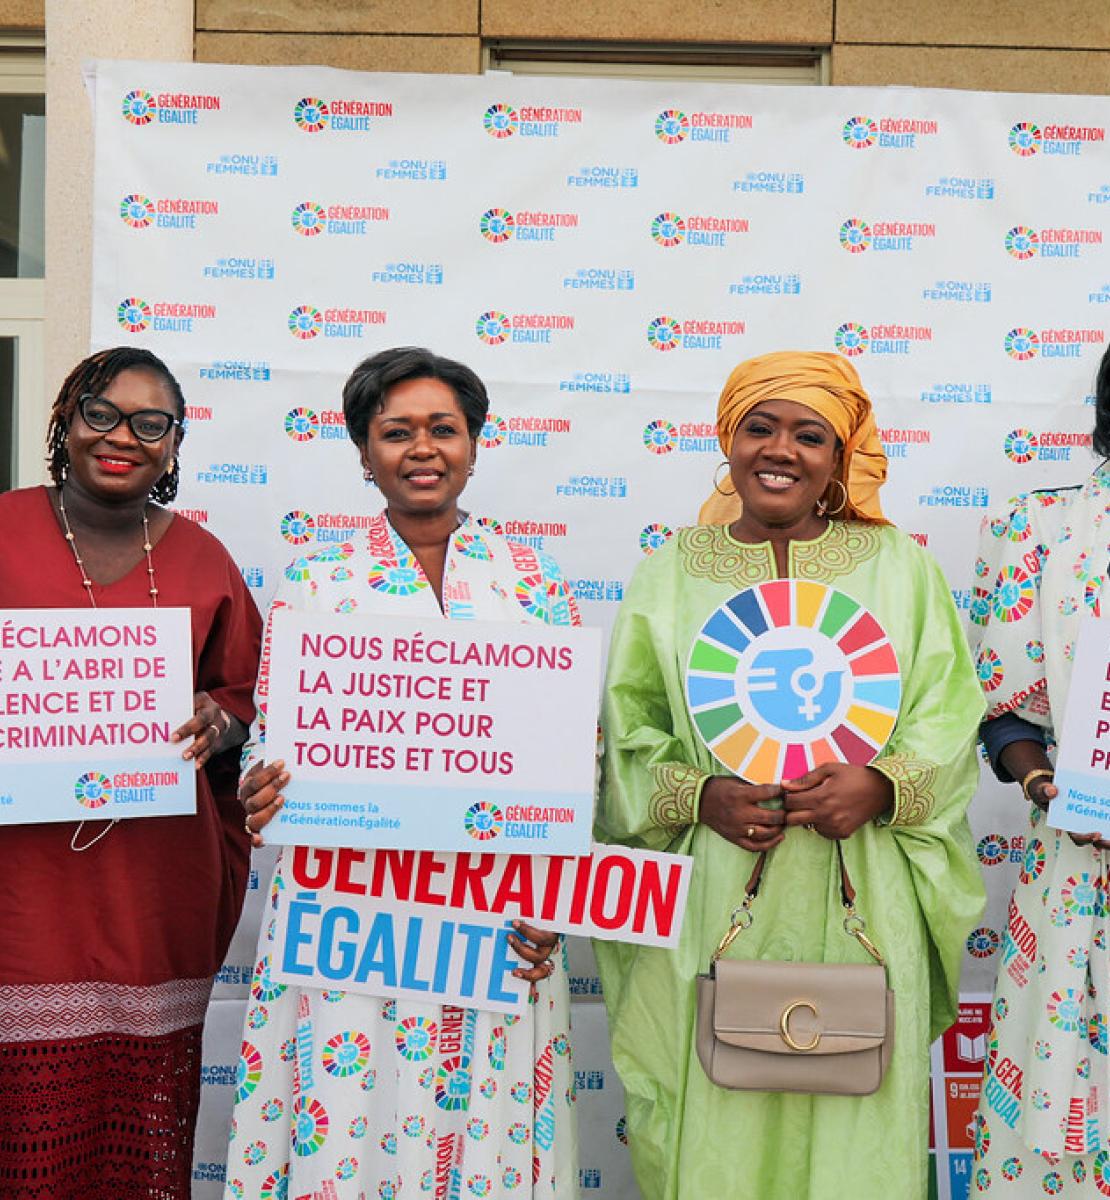 Lancement officiel par le Bureau régional d'ONU-Femmes pour l'Afrique de l'Ouest et du Centre de la campagne “Génération Égalité” avec l'Ambassade de France et des représentants de la société civile à Dakar, au Sénégal, le 2 juin 2021.